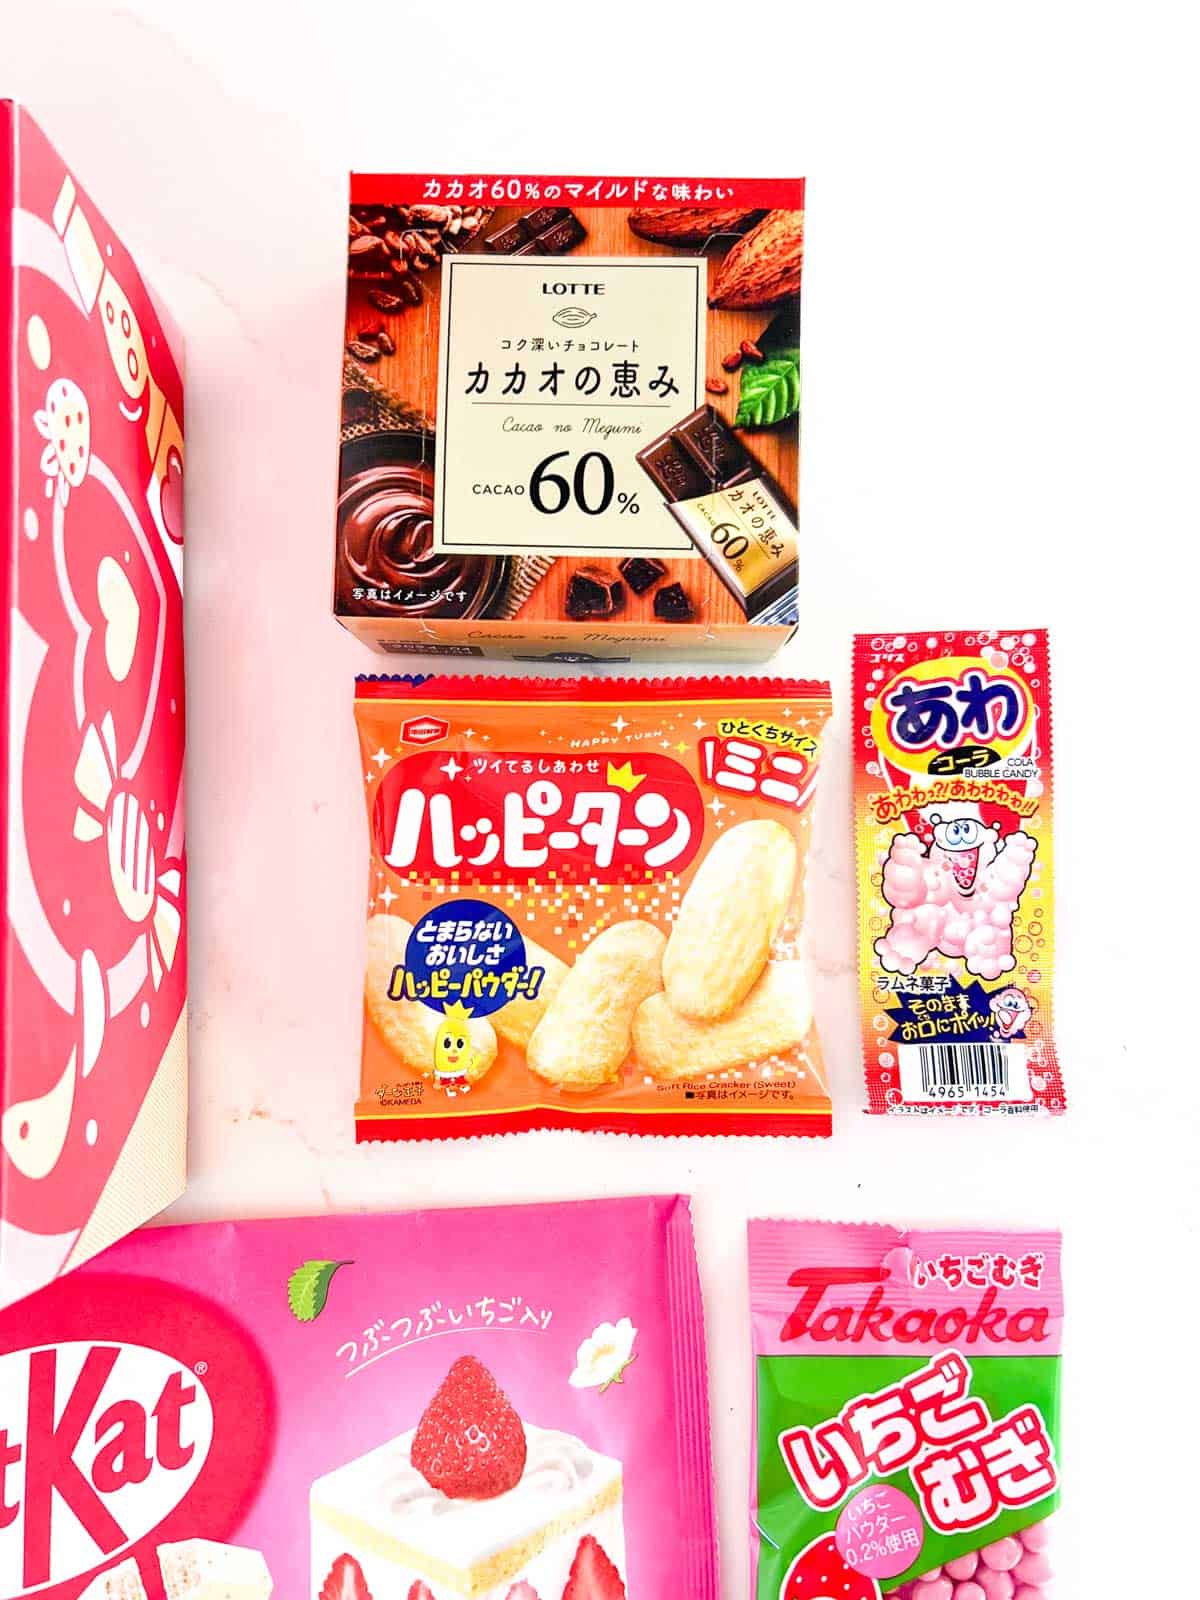 japanese snack box treats